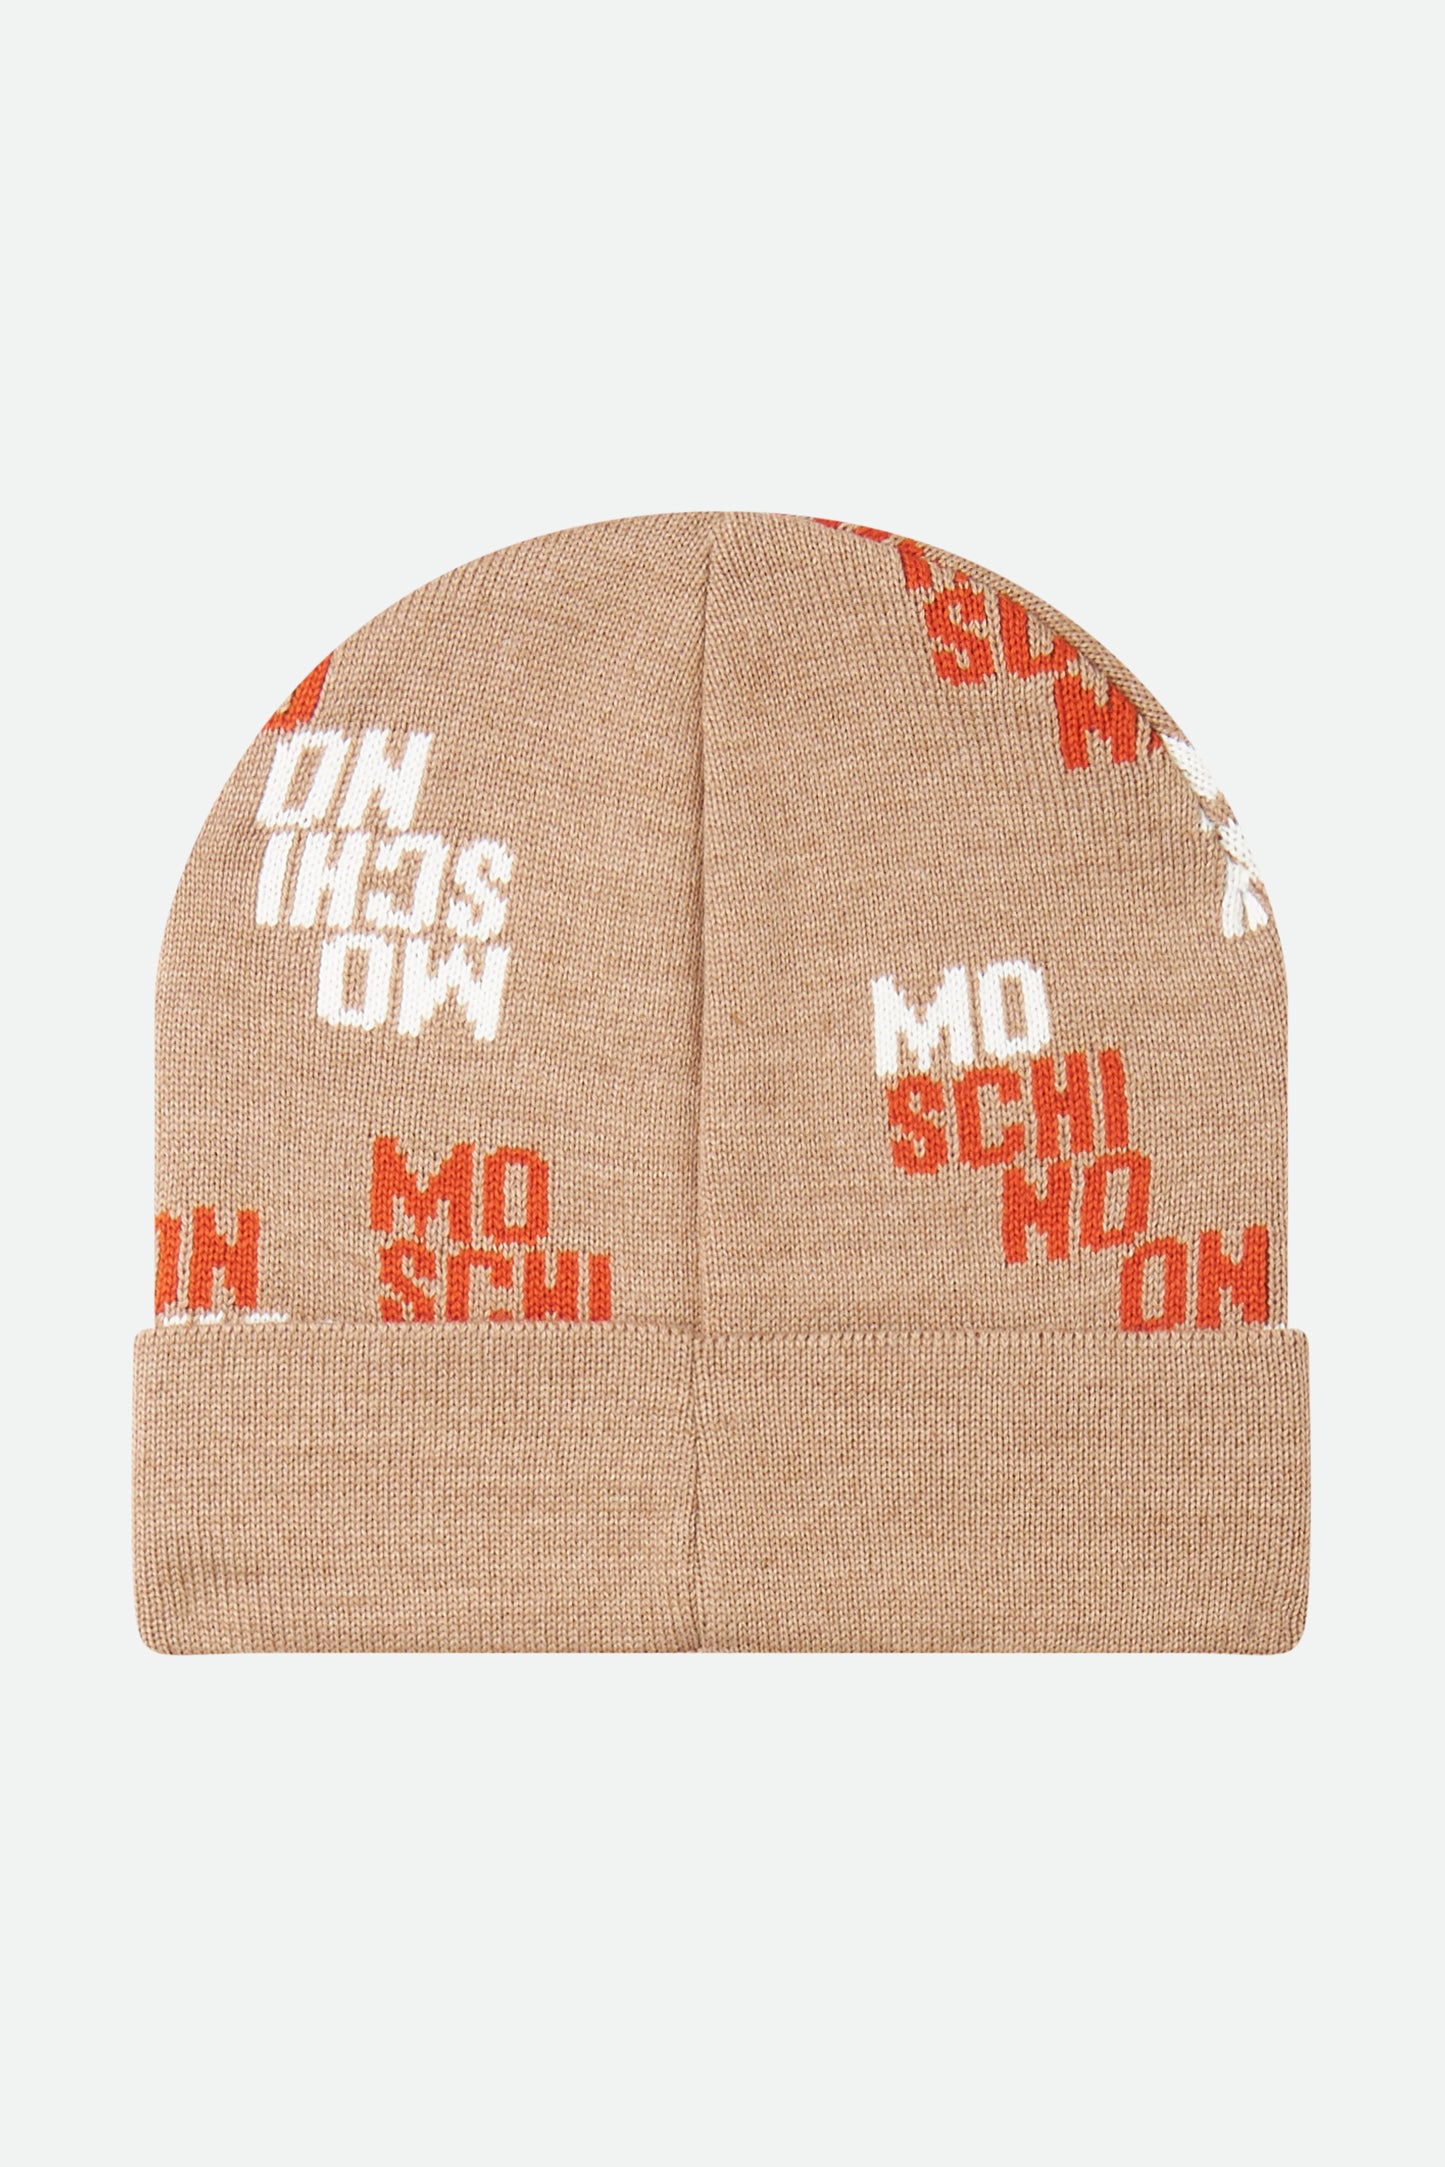 Moschino Beige Hat